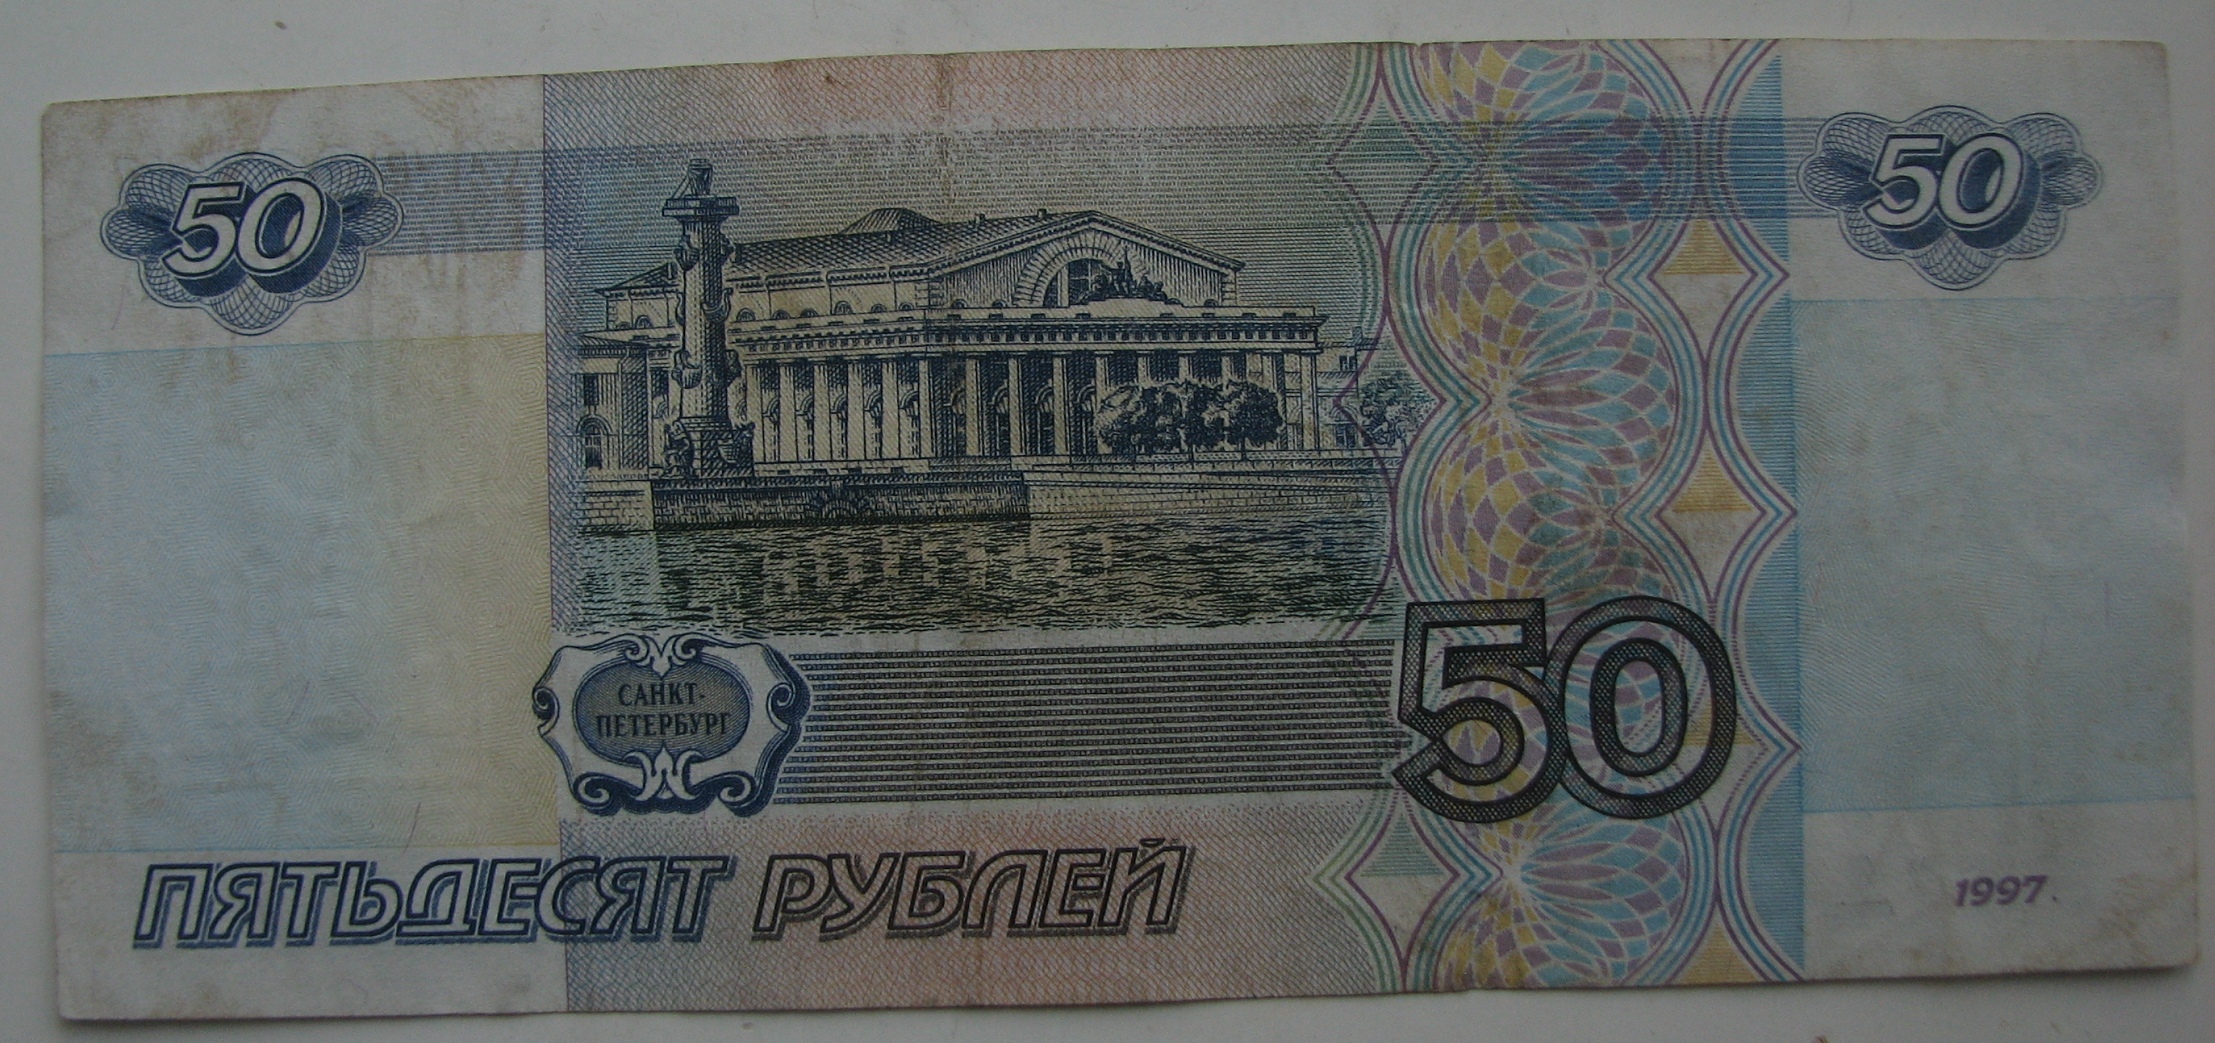 Пятьдесят руб. Купюра 50 рублей. Банкнота 50 рублей. Пятьдесят рублей банкнота. 50 Рублей 1997.